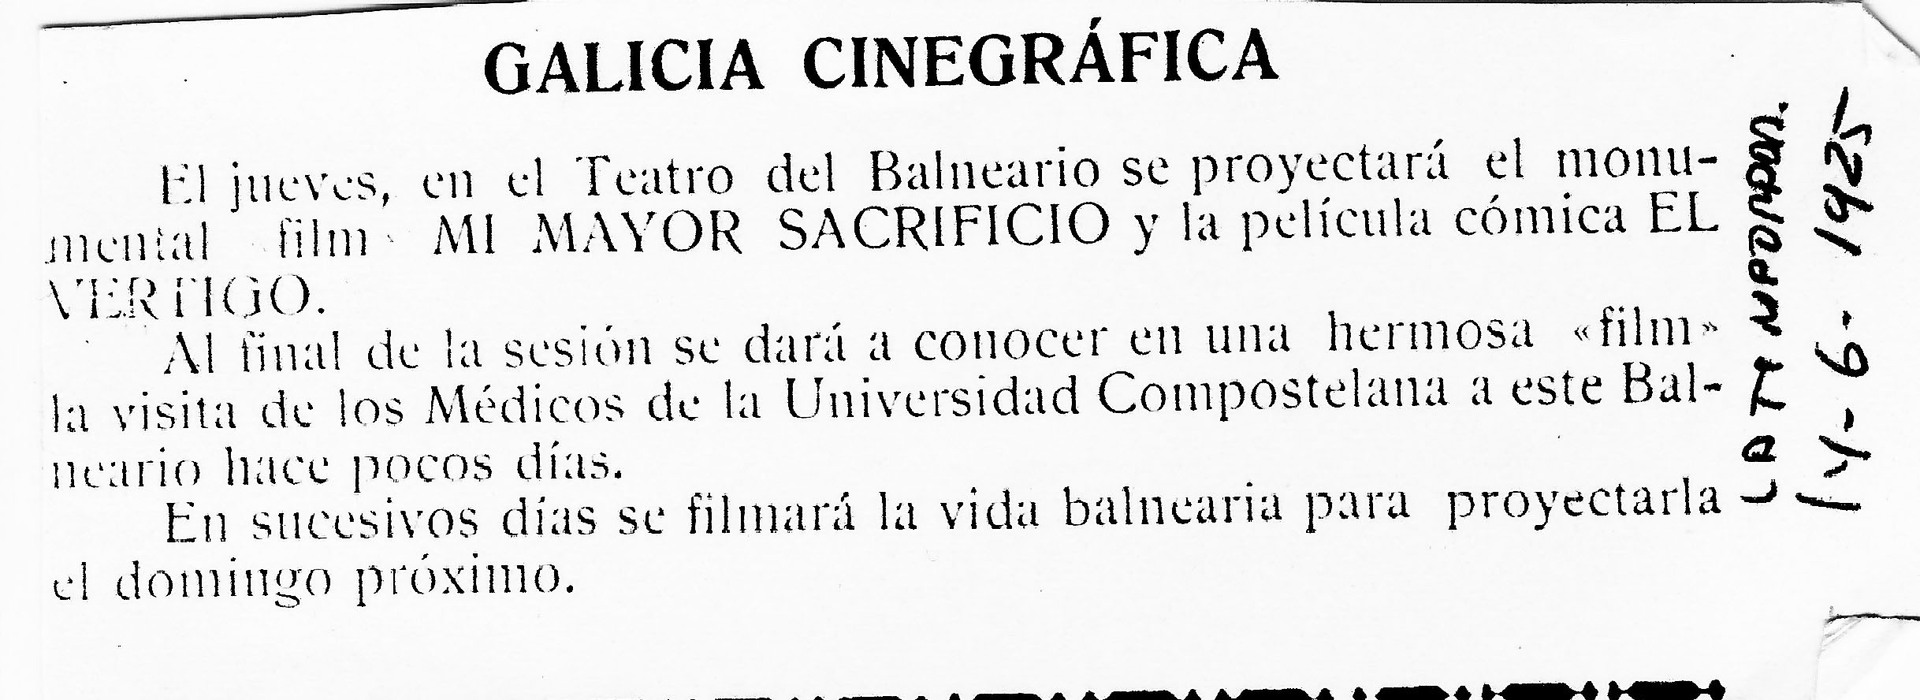 Programación do cine do Balneario, 1925